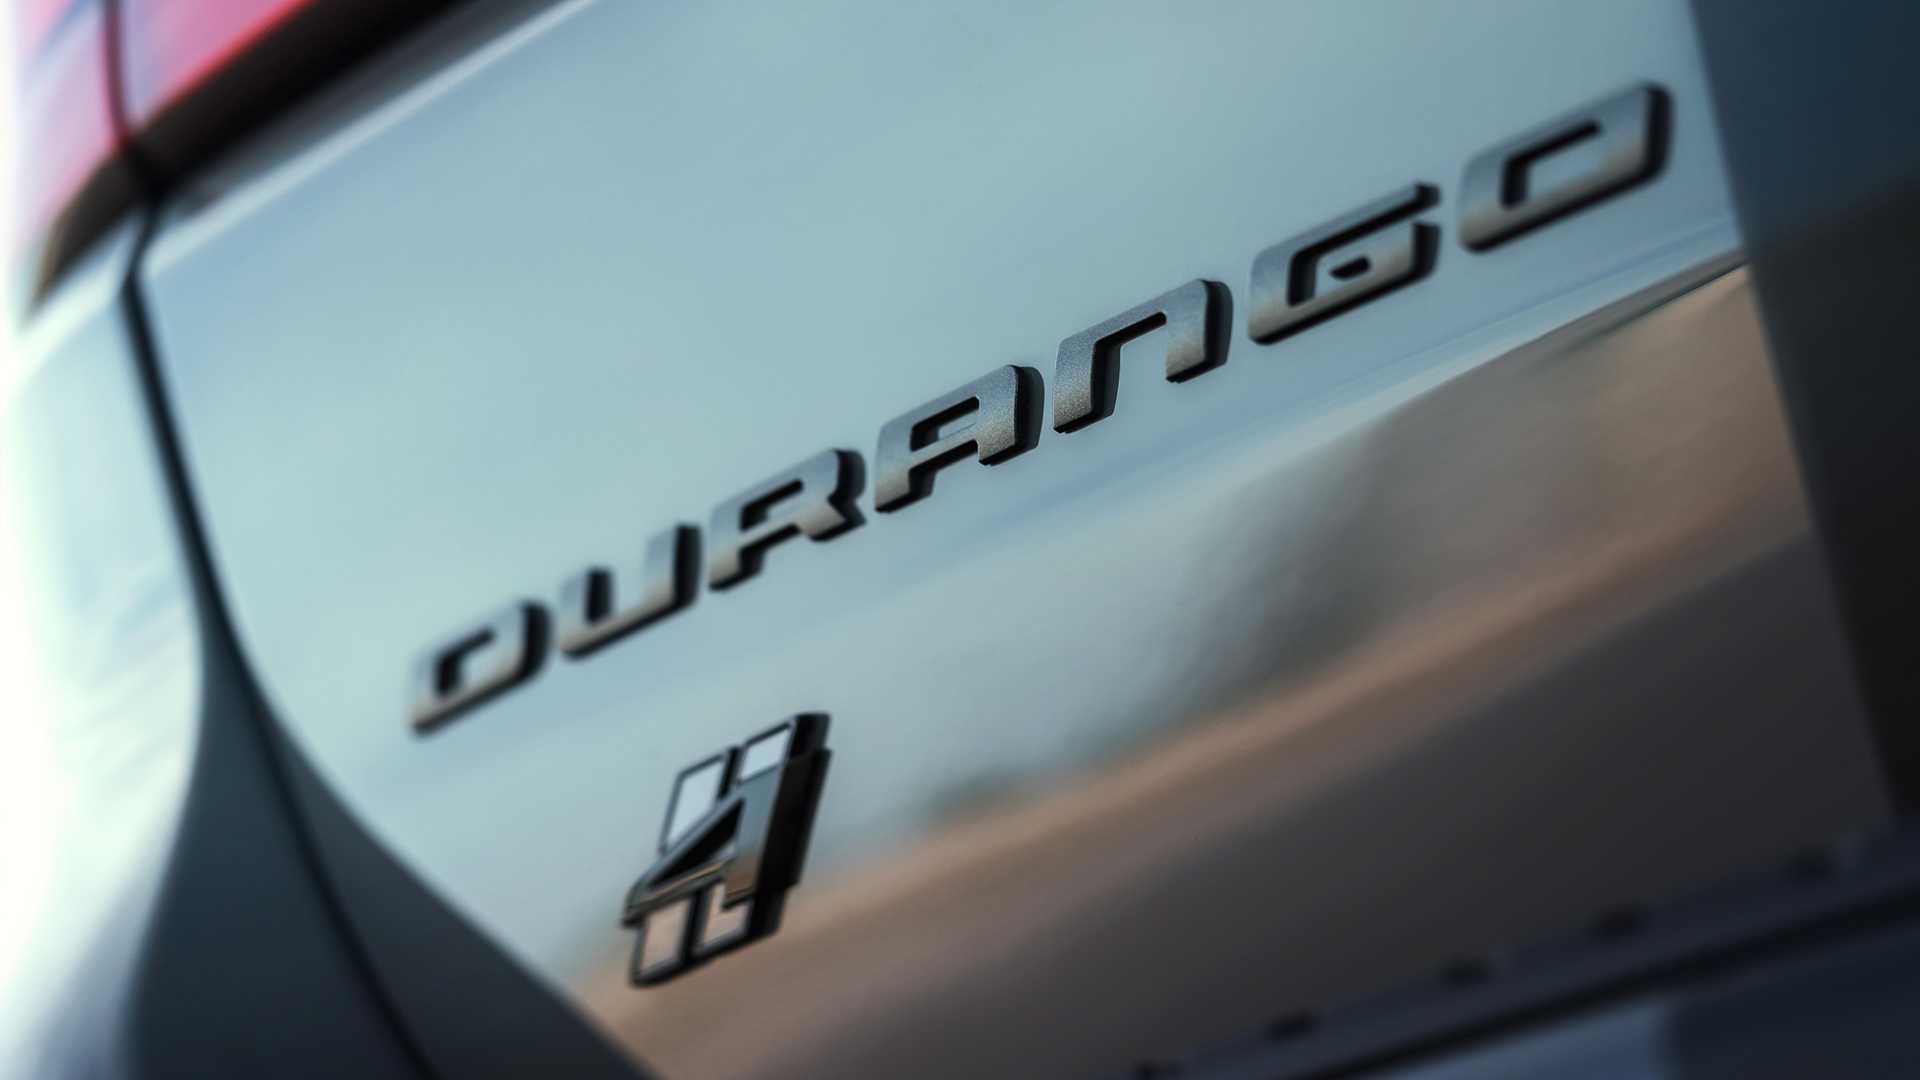 دودج تكشف عن دورانجو SRT هيلكات 2021 كأقوى SUV في العالم 62